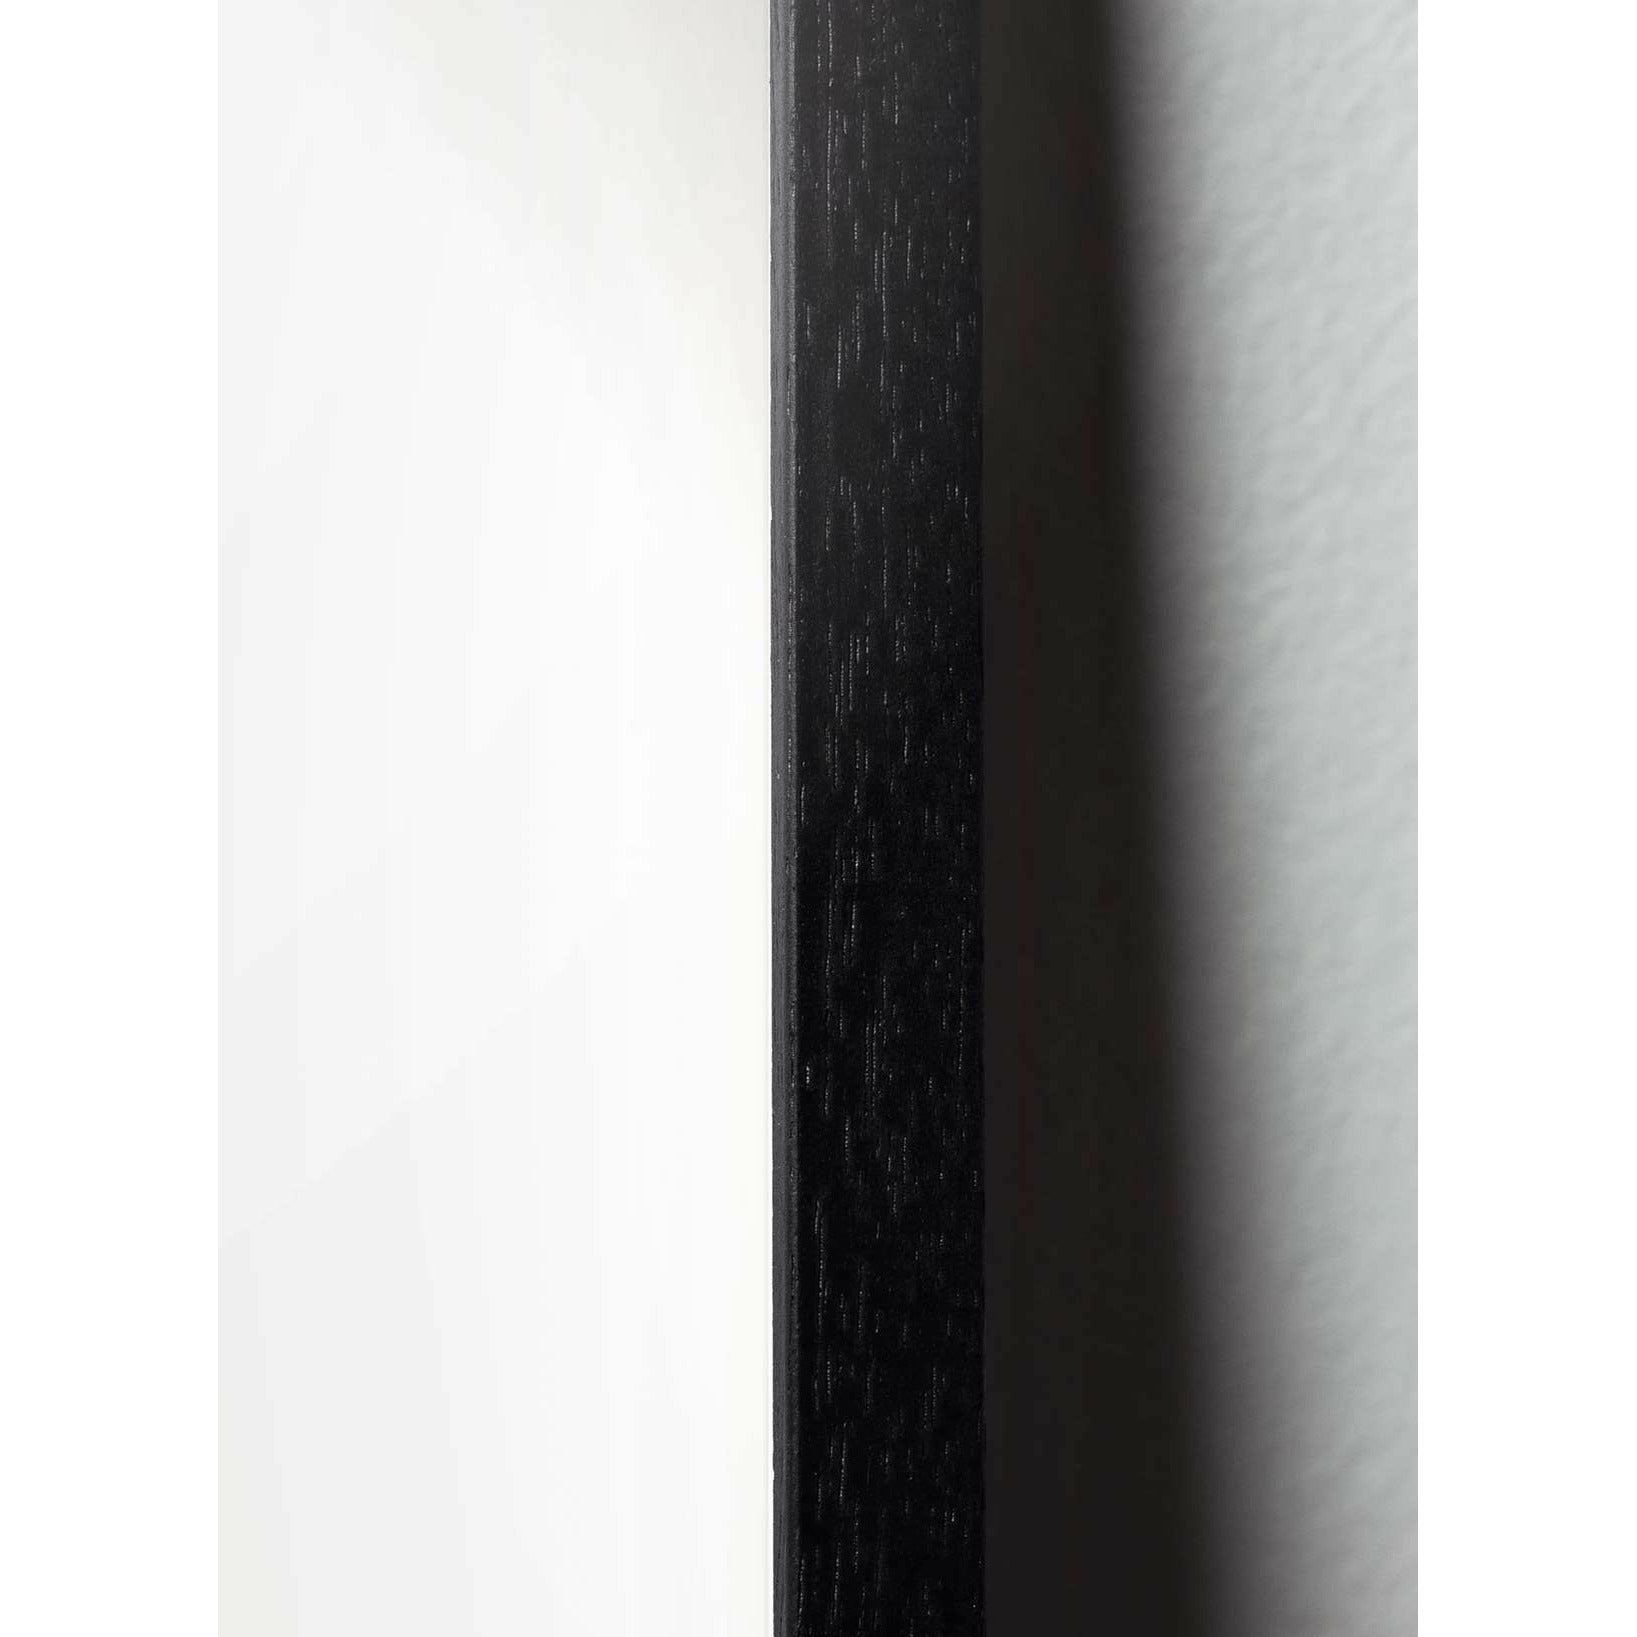 Brainchild Egg Cross Format Poster, Frame In Black Lacquered Wood 30x40 Cm, Black